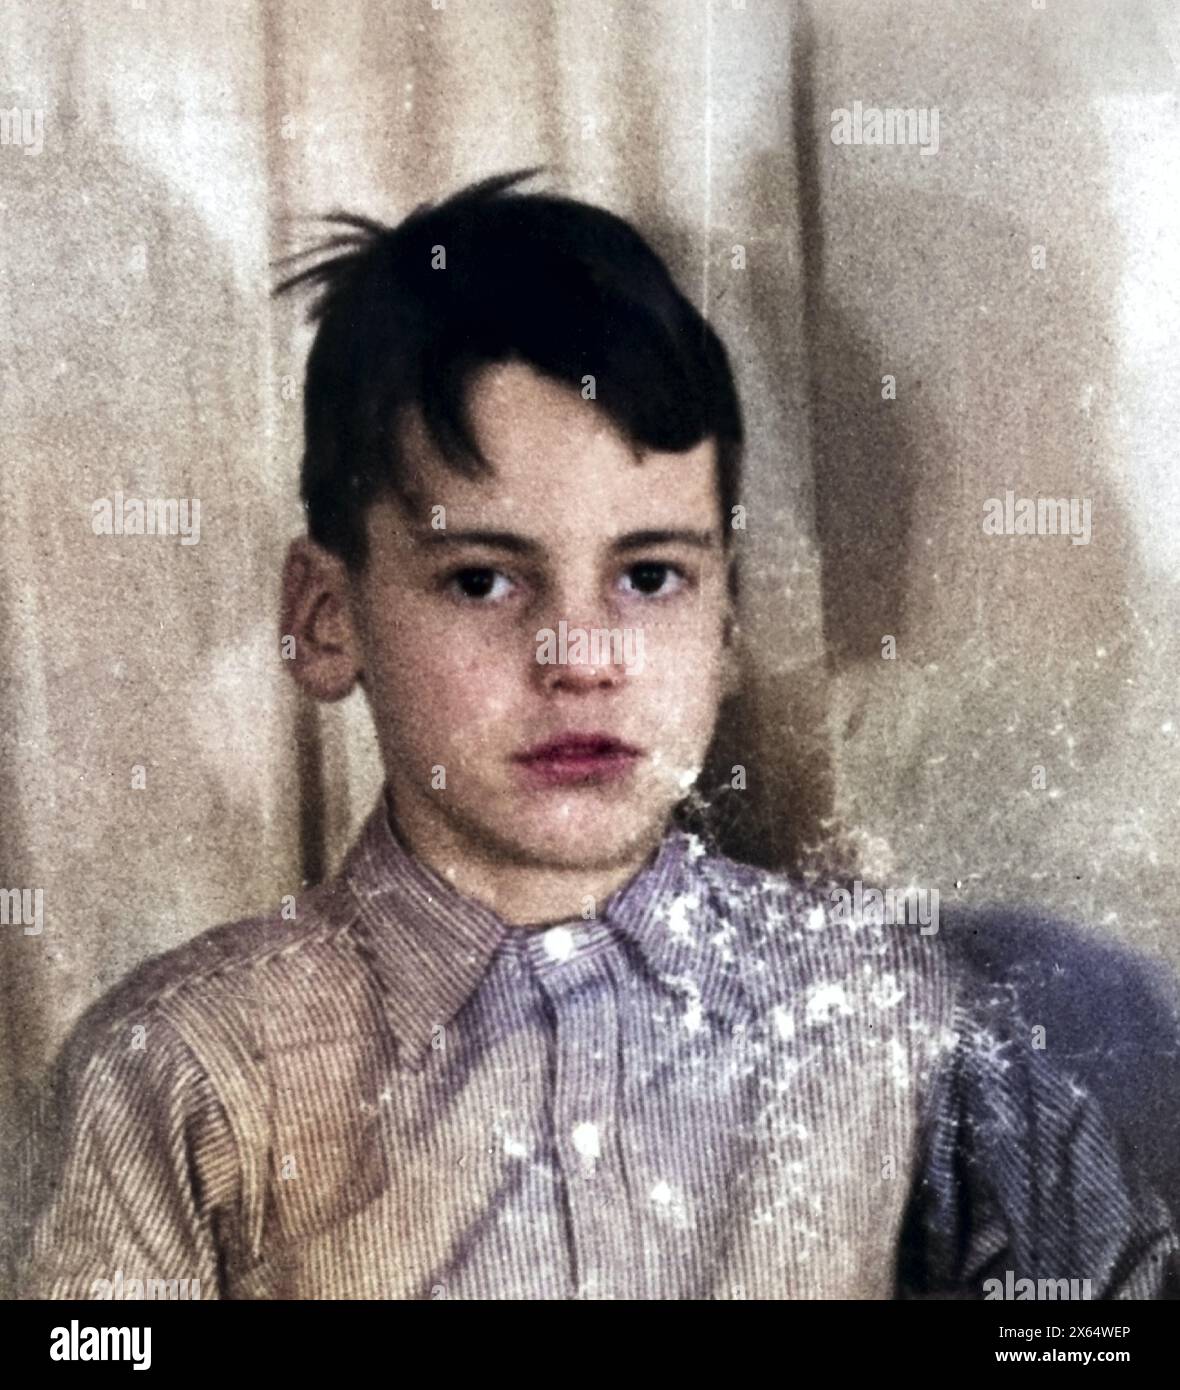 Schell, Maximilian, 8.12.1930 - 1,2.2014, acteur et réalisateur autrichien, enfant, portrait, fin des années 1930, SUPPLÉMENT-DROITS-AUTORISATION-INFO-NOT-AVAILABLE Banque D'Images